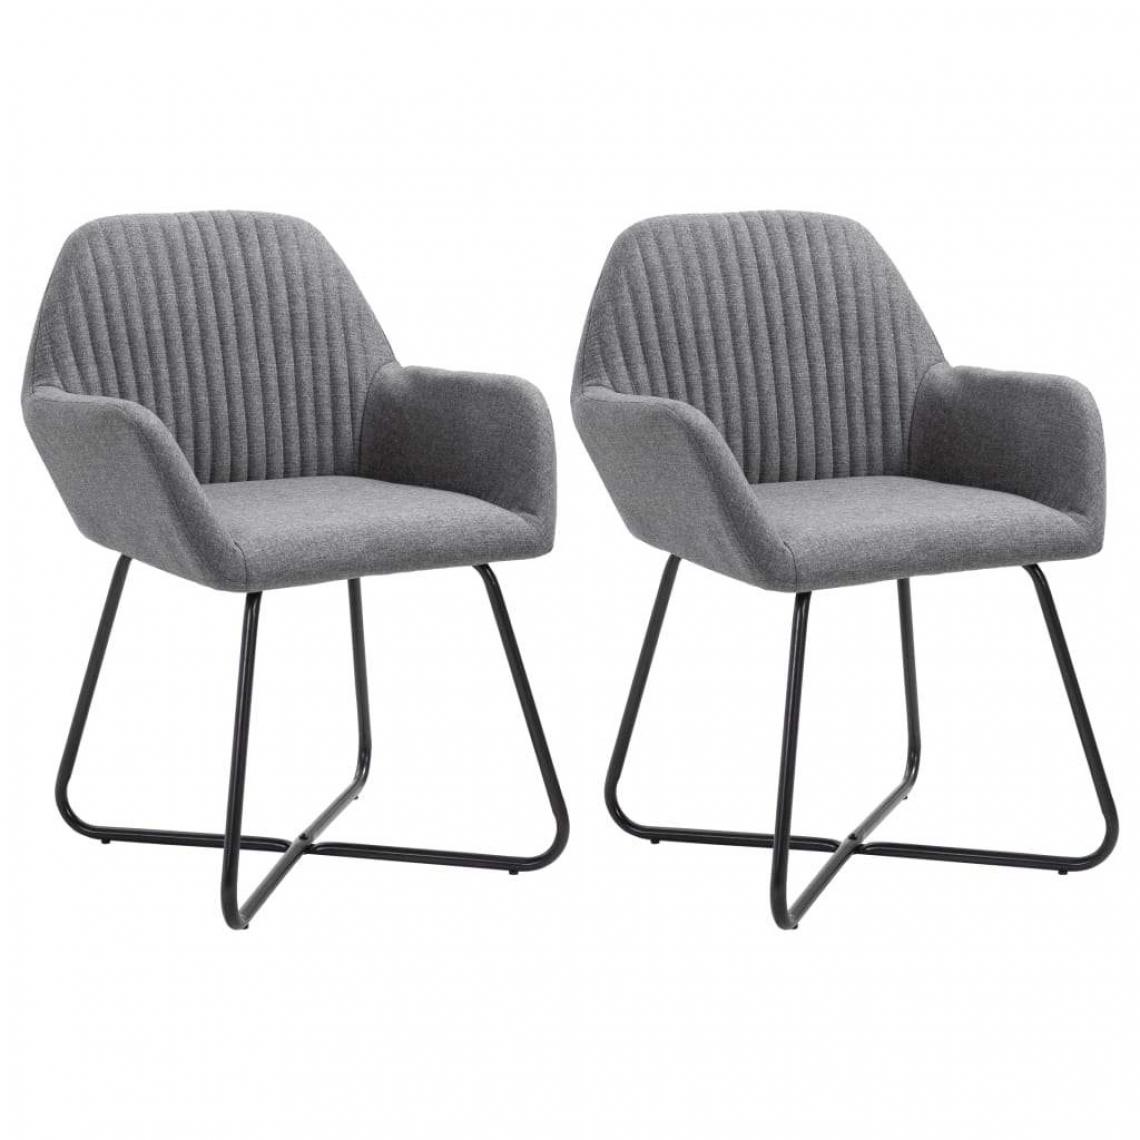 Decoshop26 - Lot de 2 chaises de salle à manger cuisine design moderne tissu gris foncé CDS020541 - Chaises